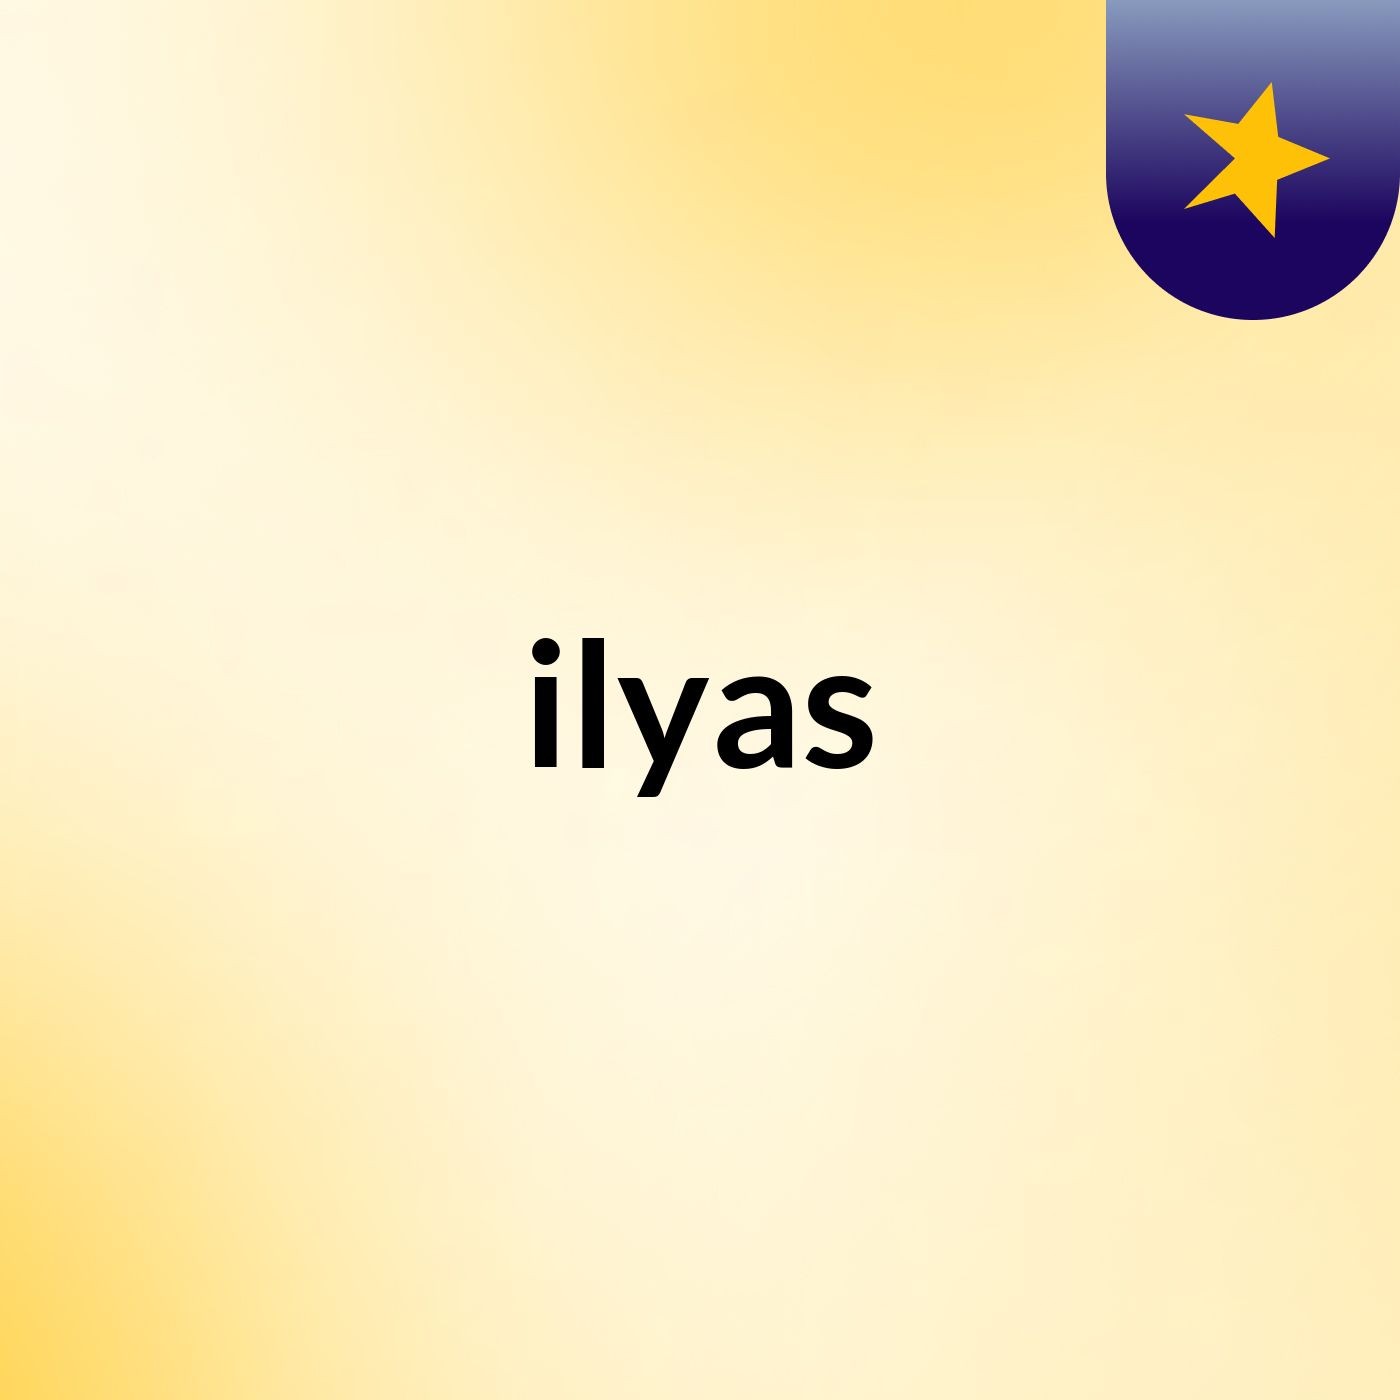 ilyas